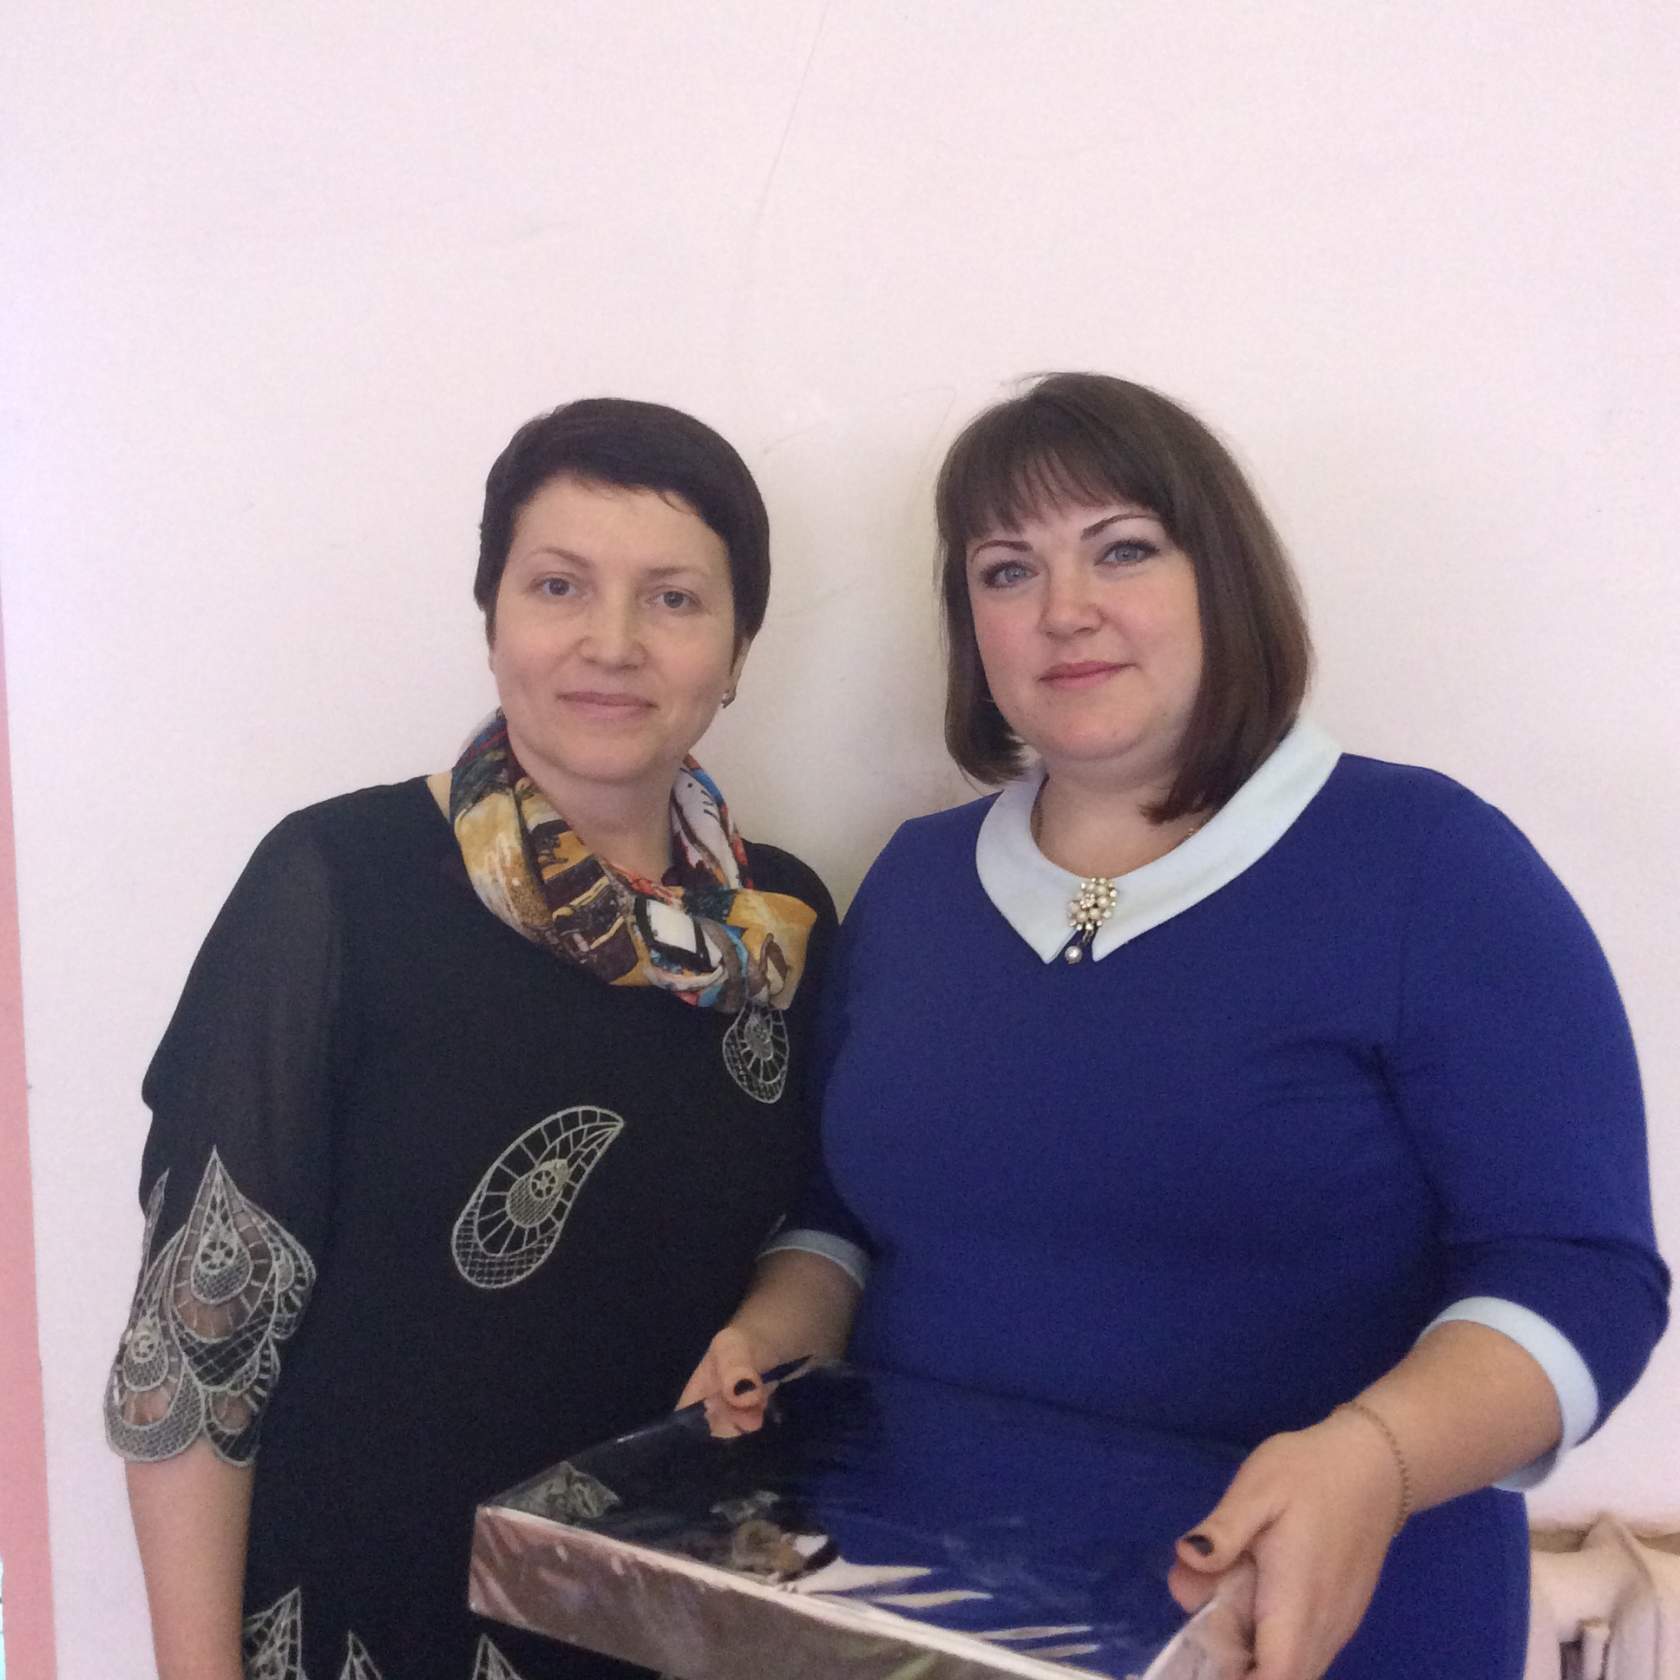 День матери в Княгинино в 2016 году при участии Нижегородского кредитного союза кпк